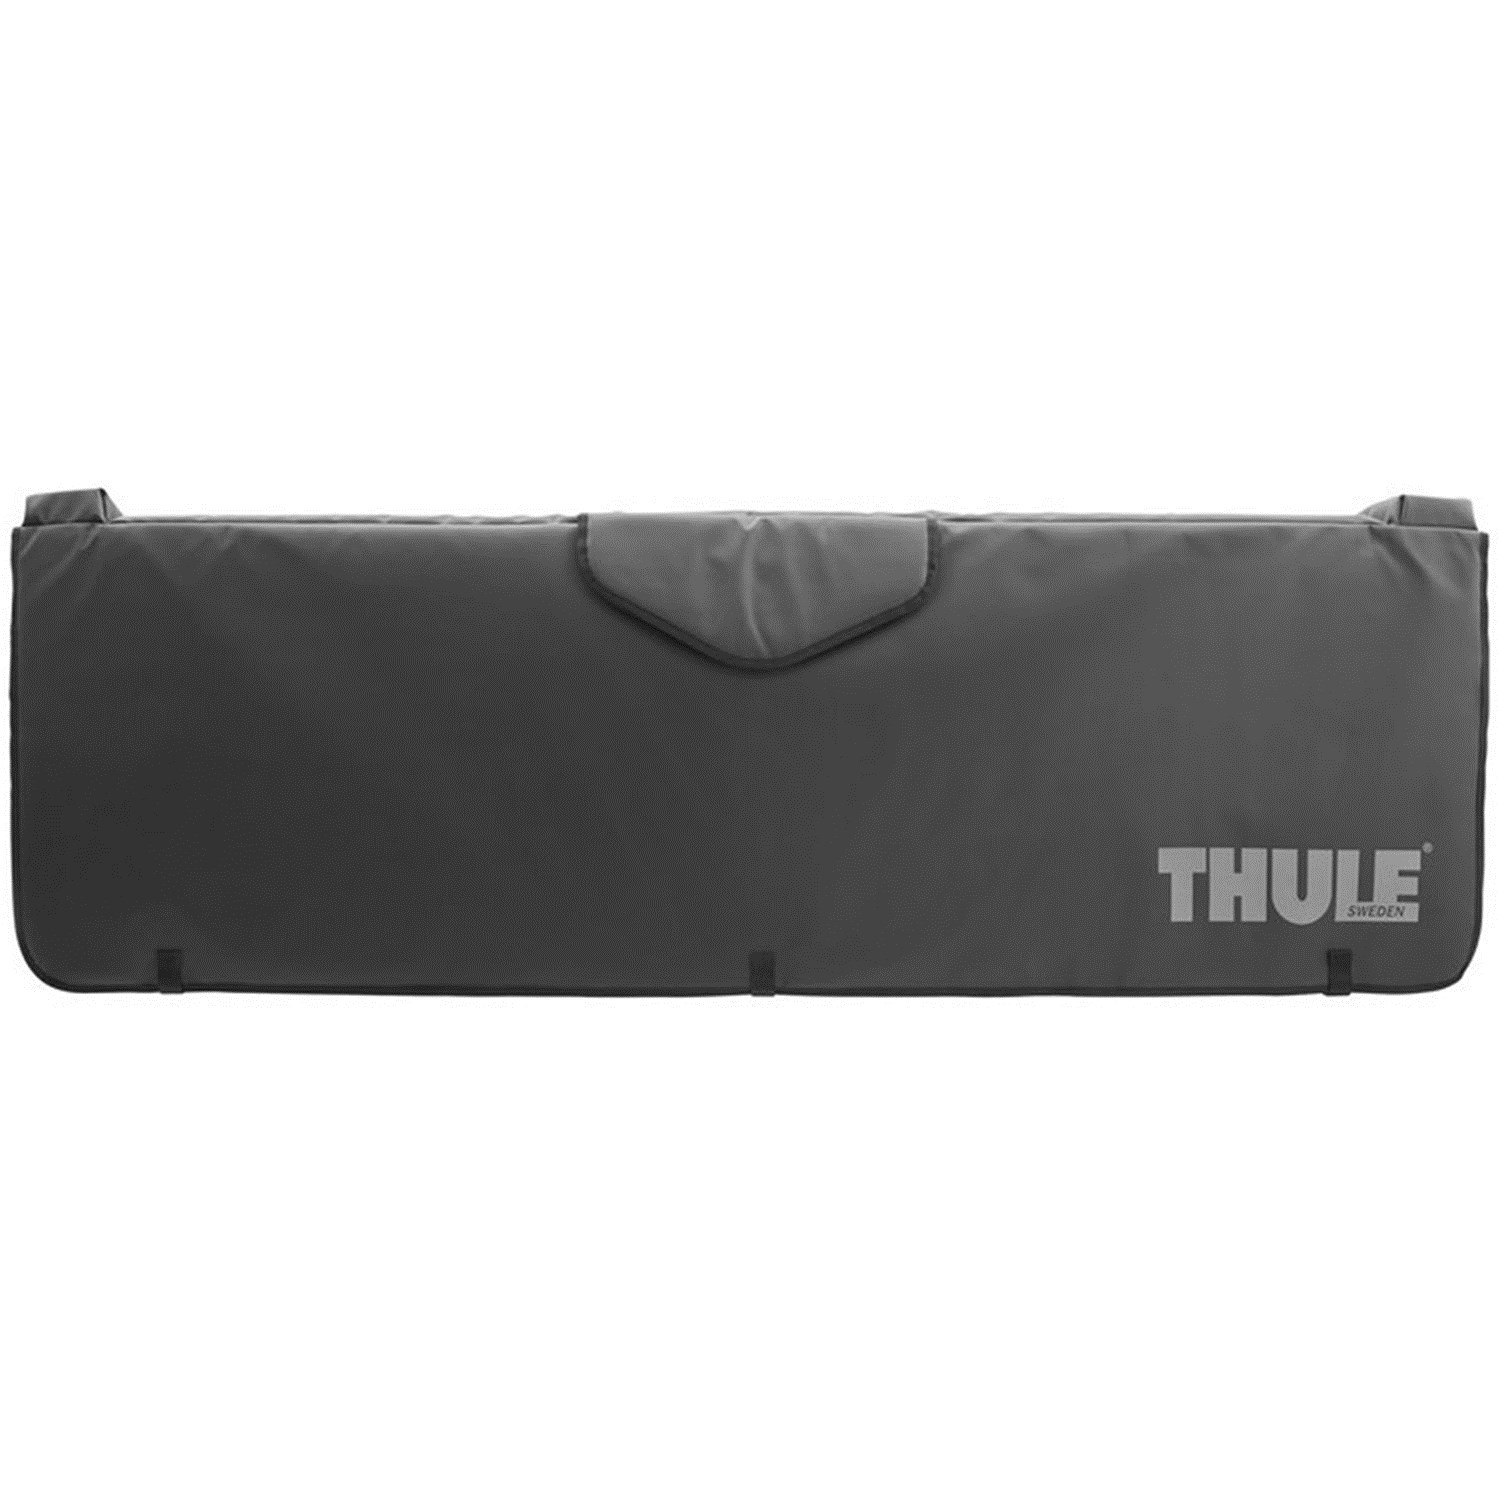 thule truck pad